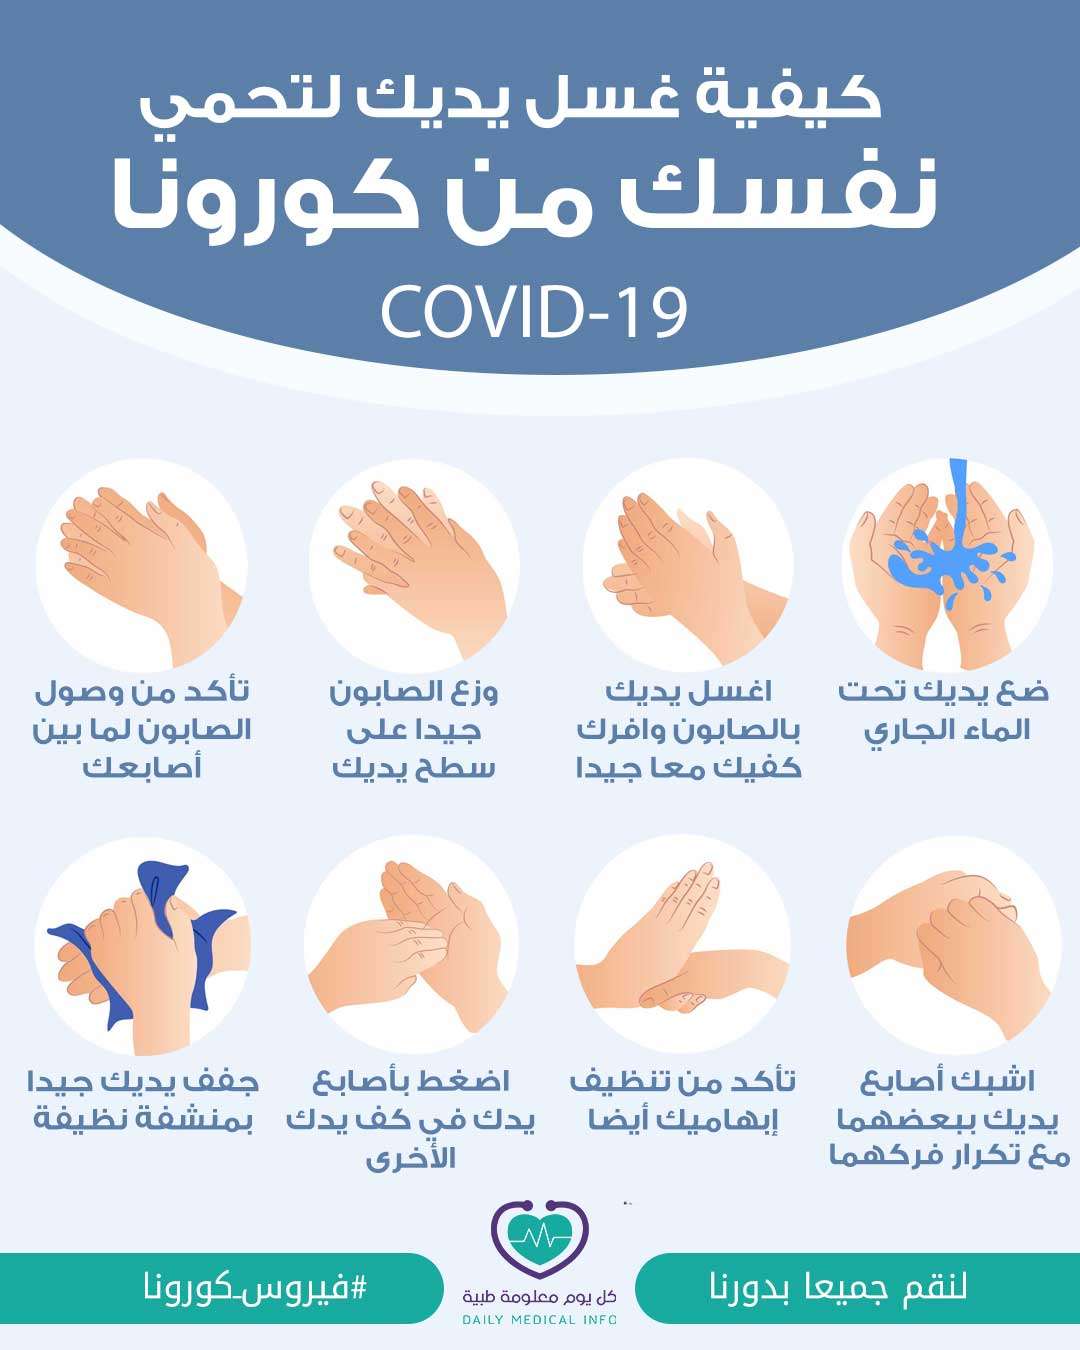 كيف تحمي نفسك وأسرتك من الإصابة بفيروس كورونا بغسل اليدين ؟